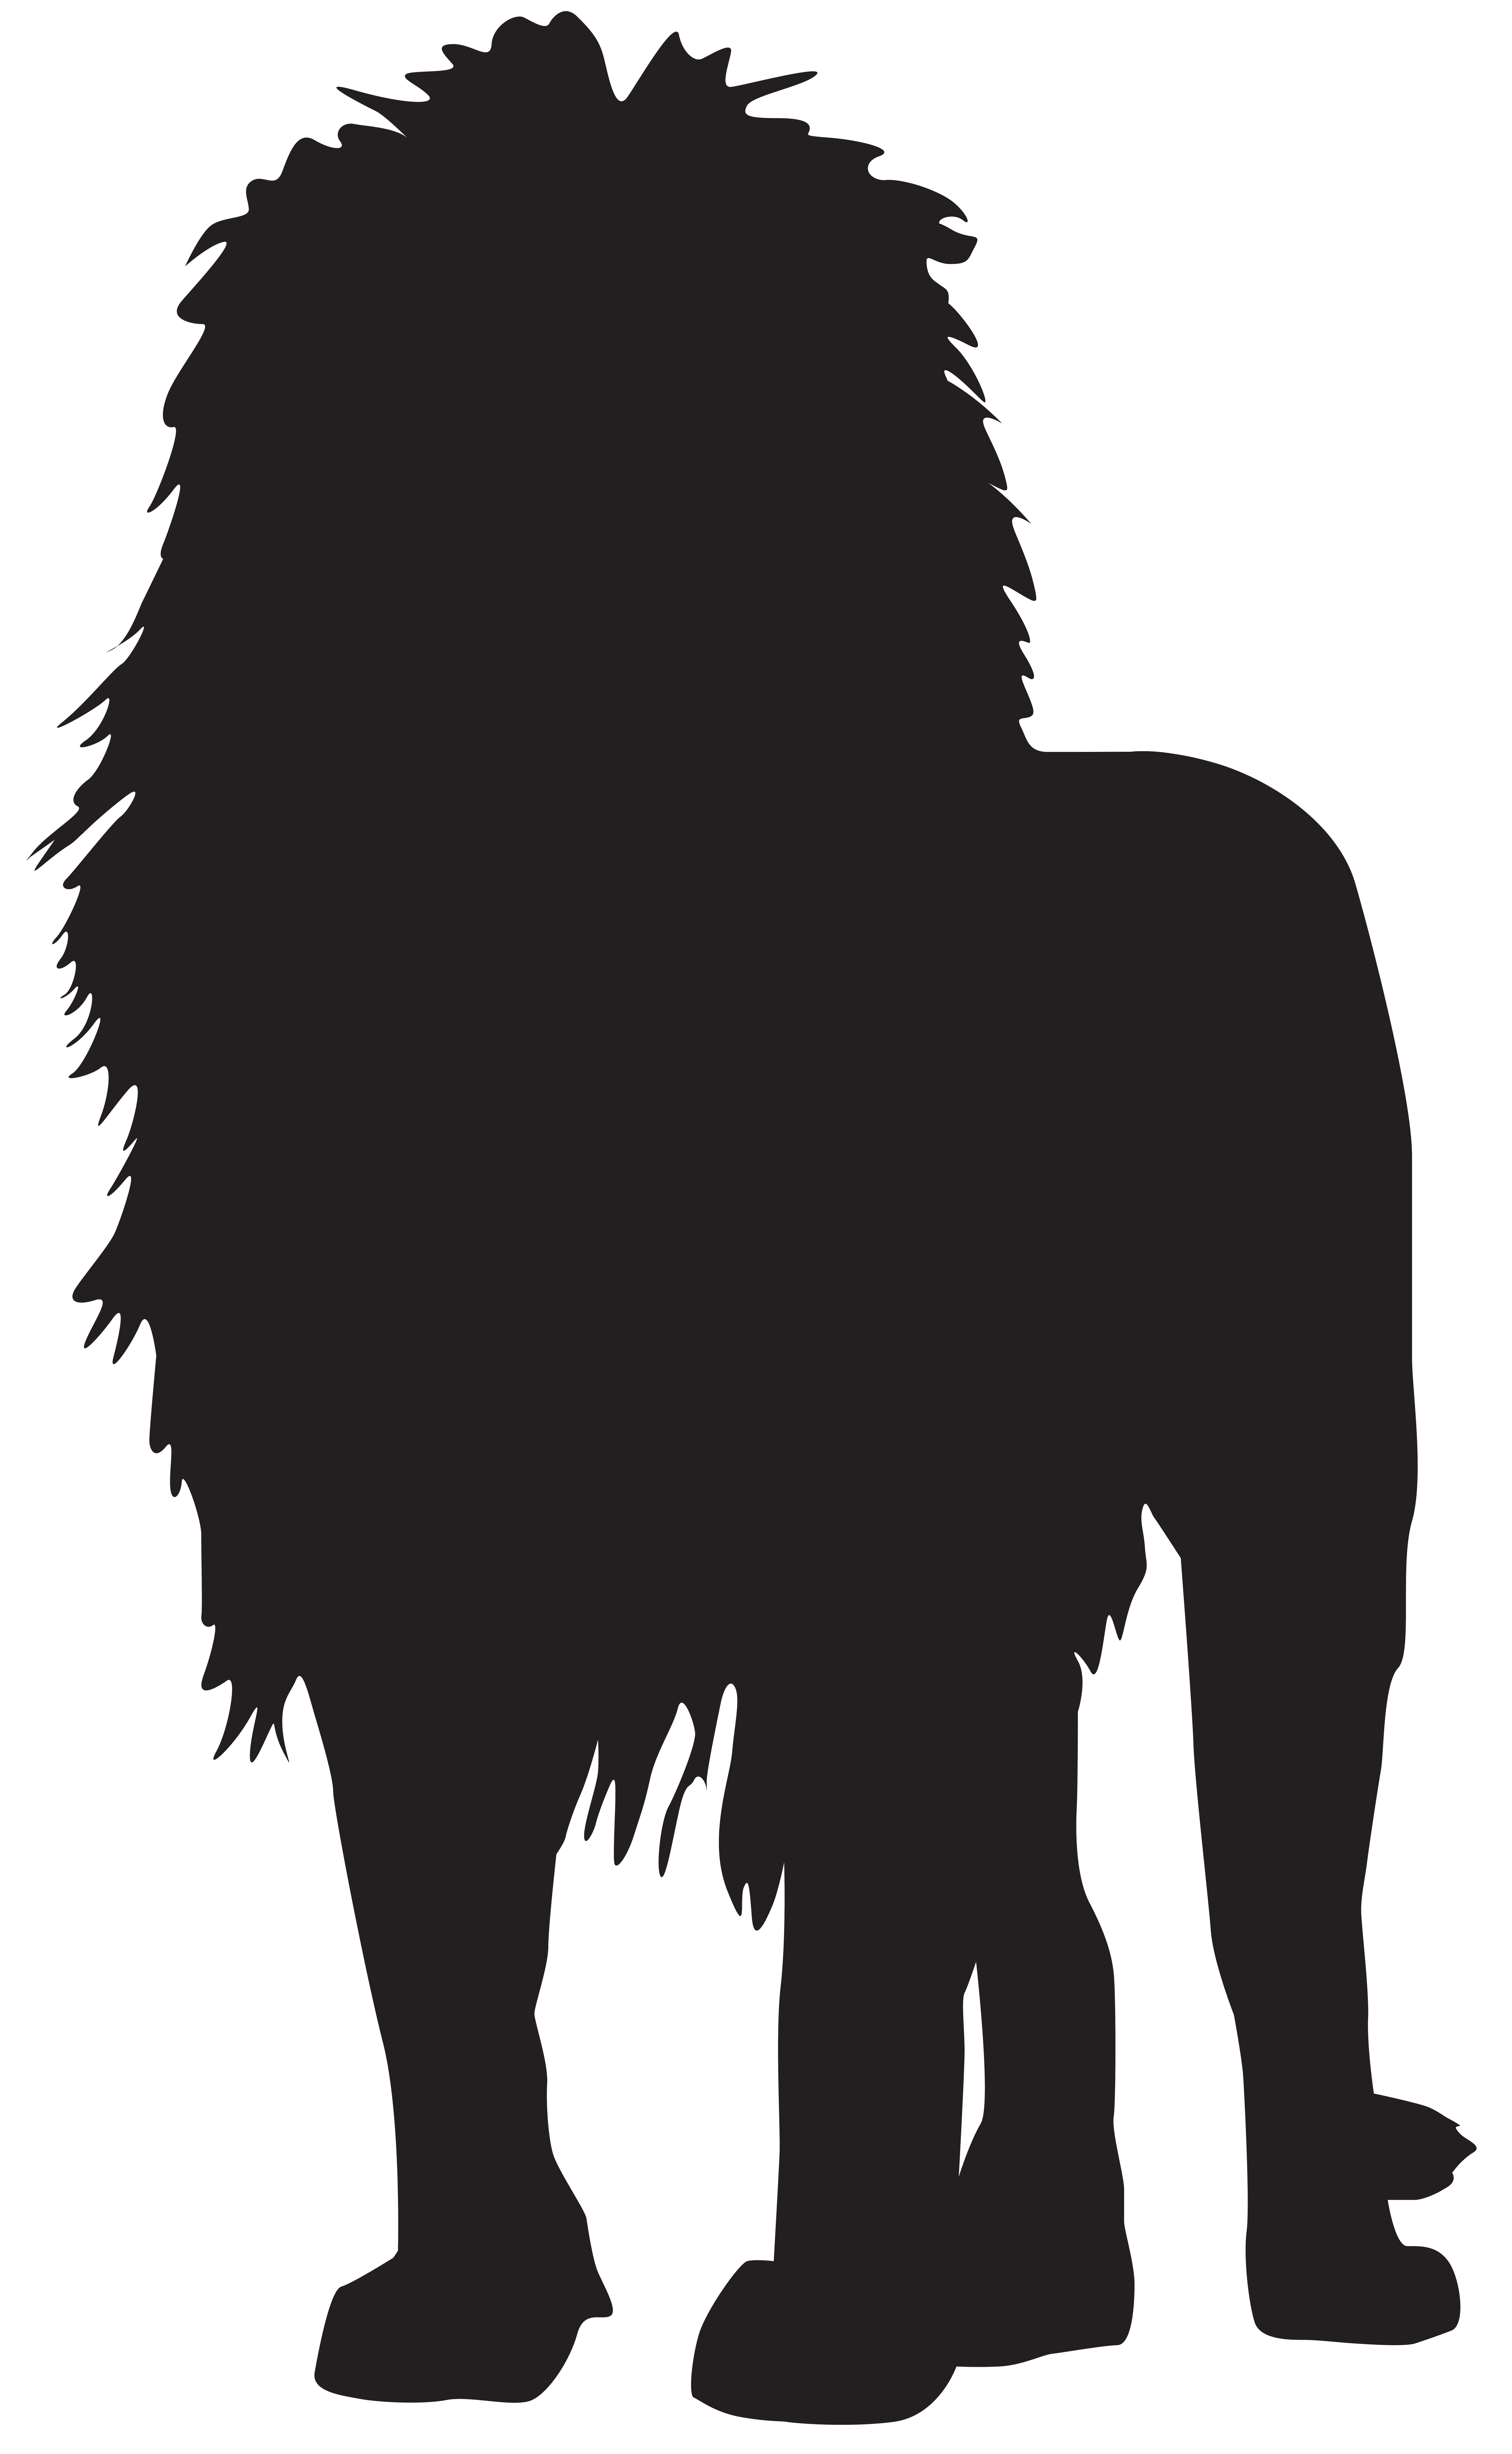 Lion Silhouette PNG Transparent Clip Art Image 